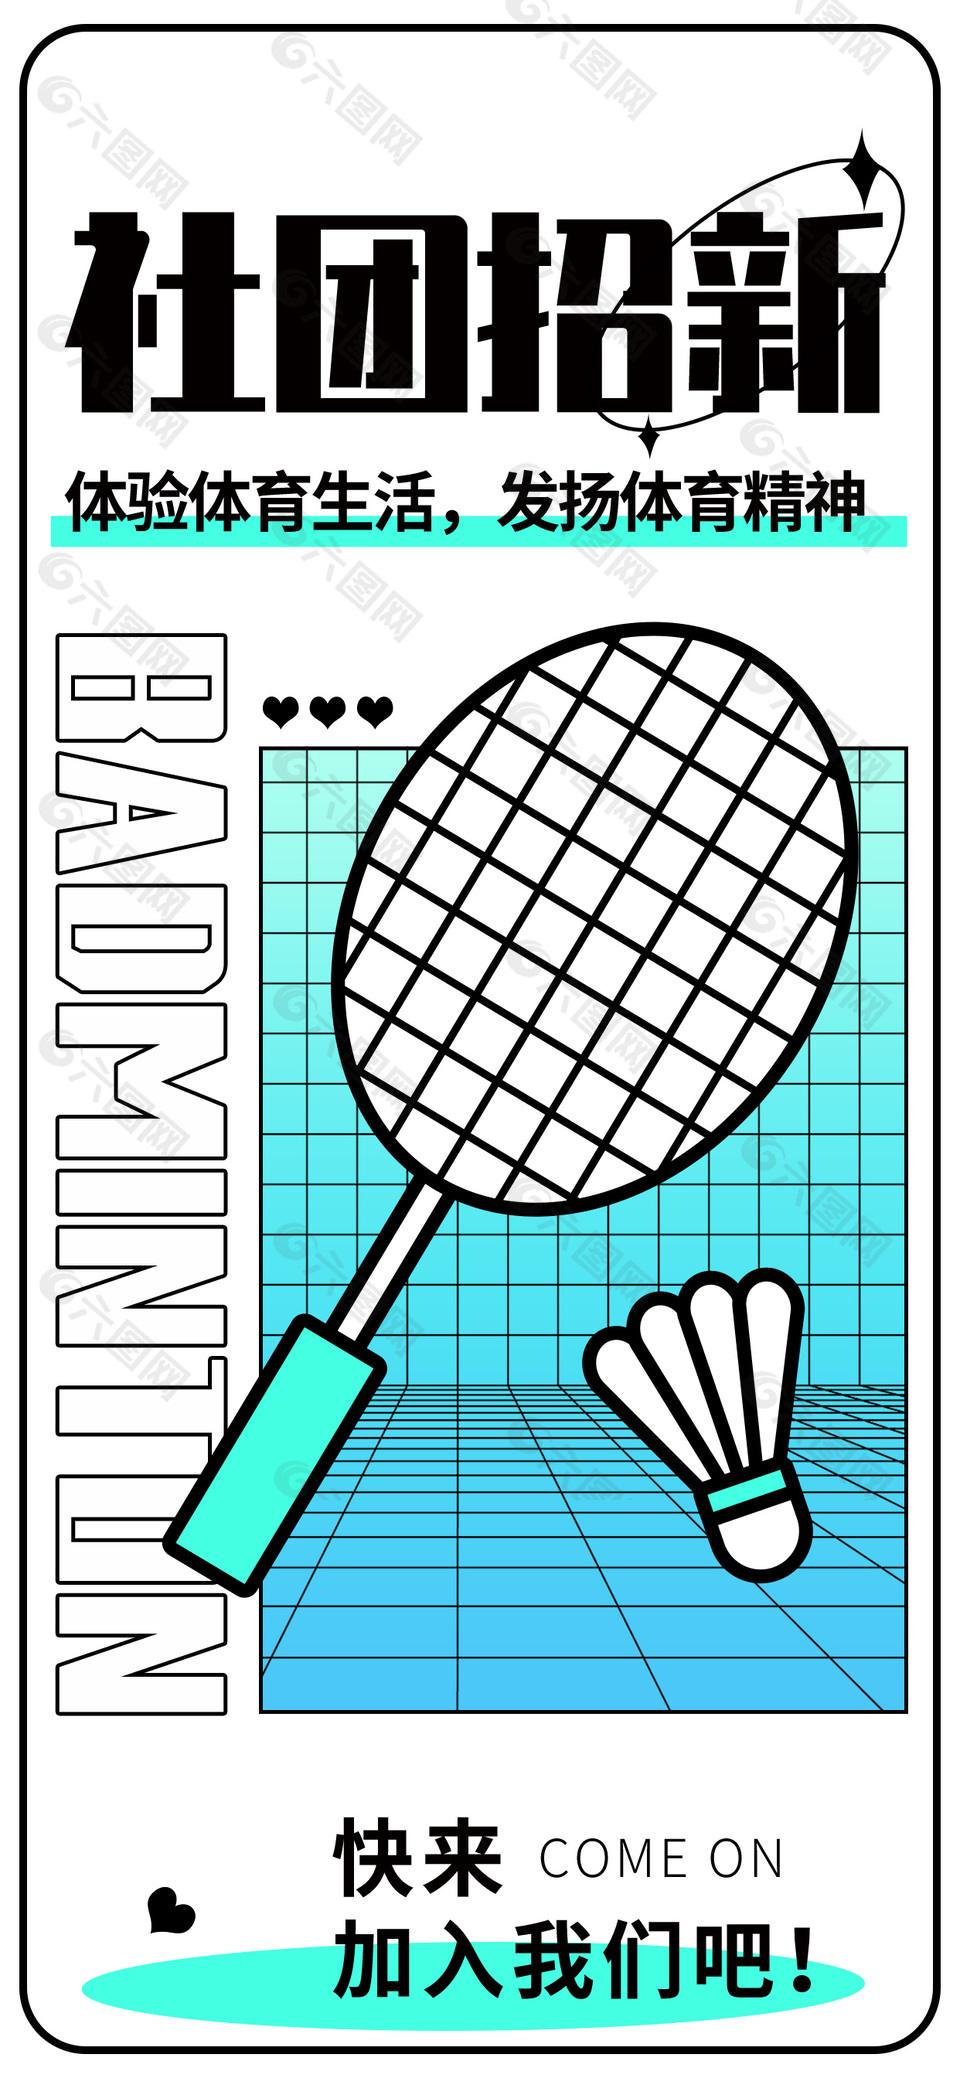 社团招新羽毛球社线条描边海报设计